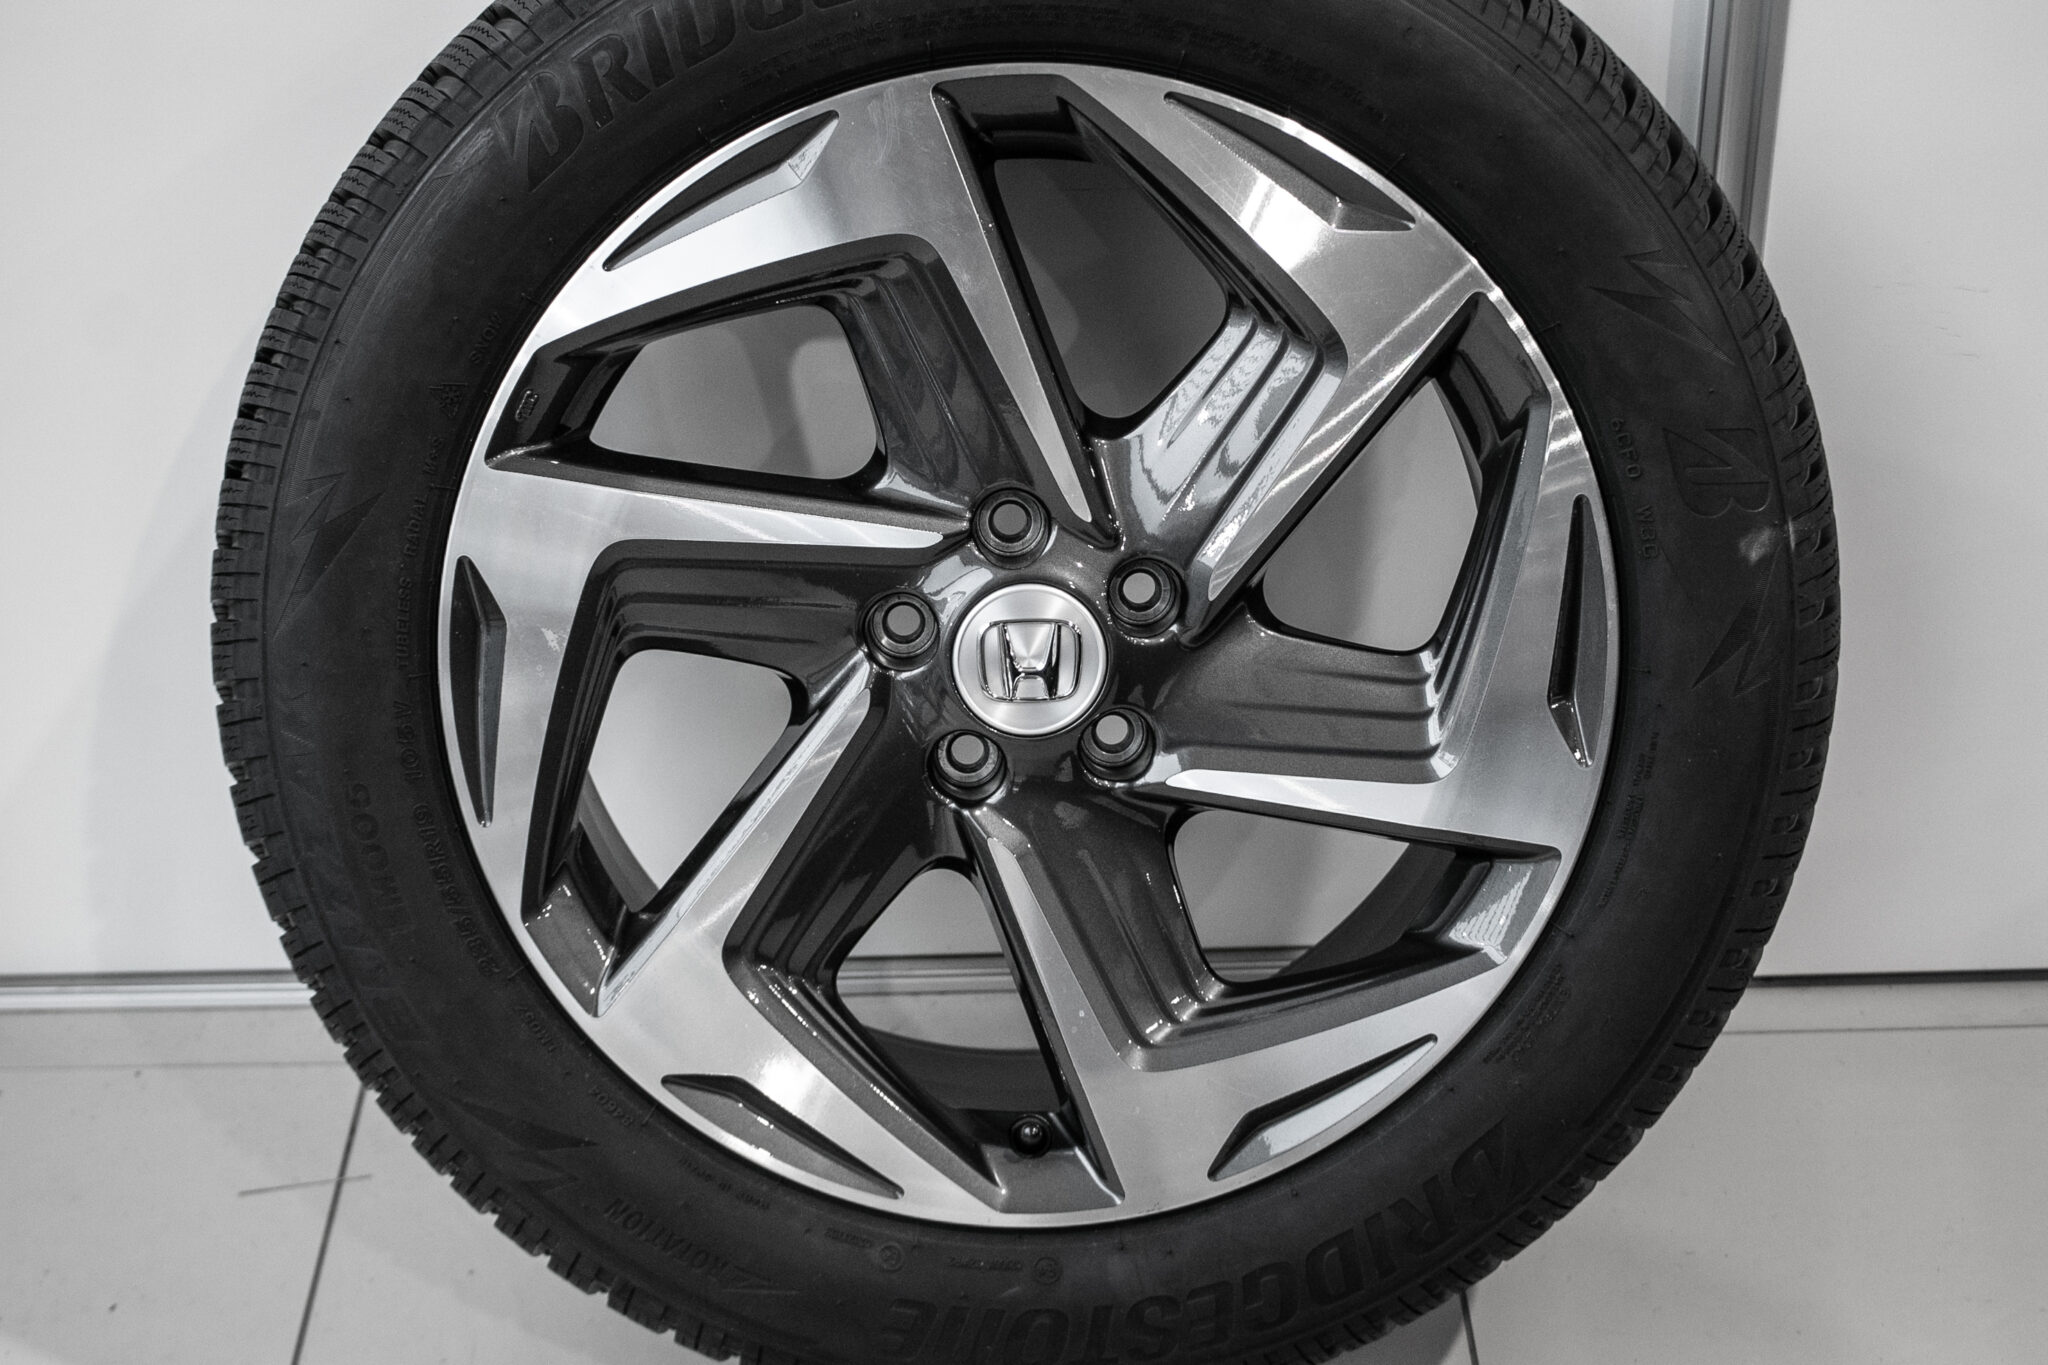 19" Winterwielen voor de Honda CR-V vanaf 18
€1.495,-
gebruikt. Profieldiepte: 2x nieuw -  7.8mm